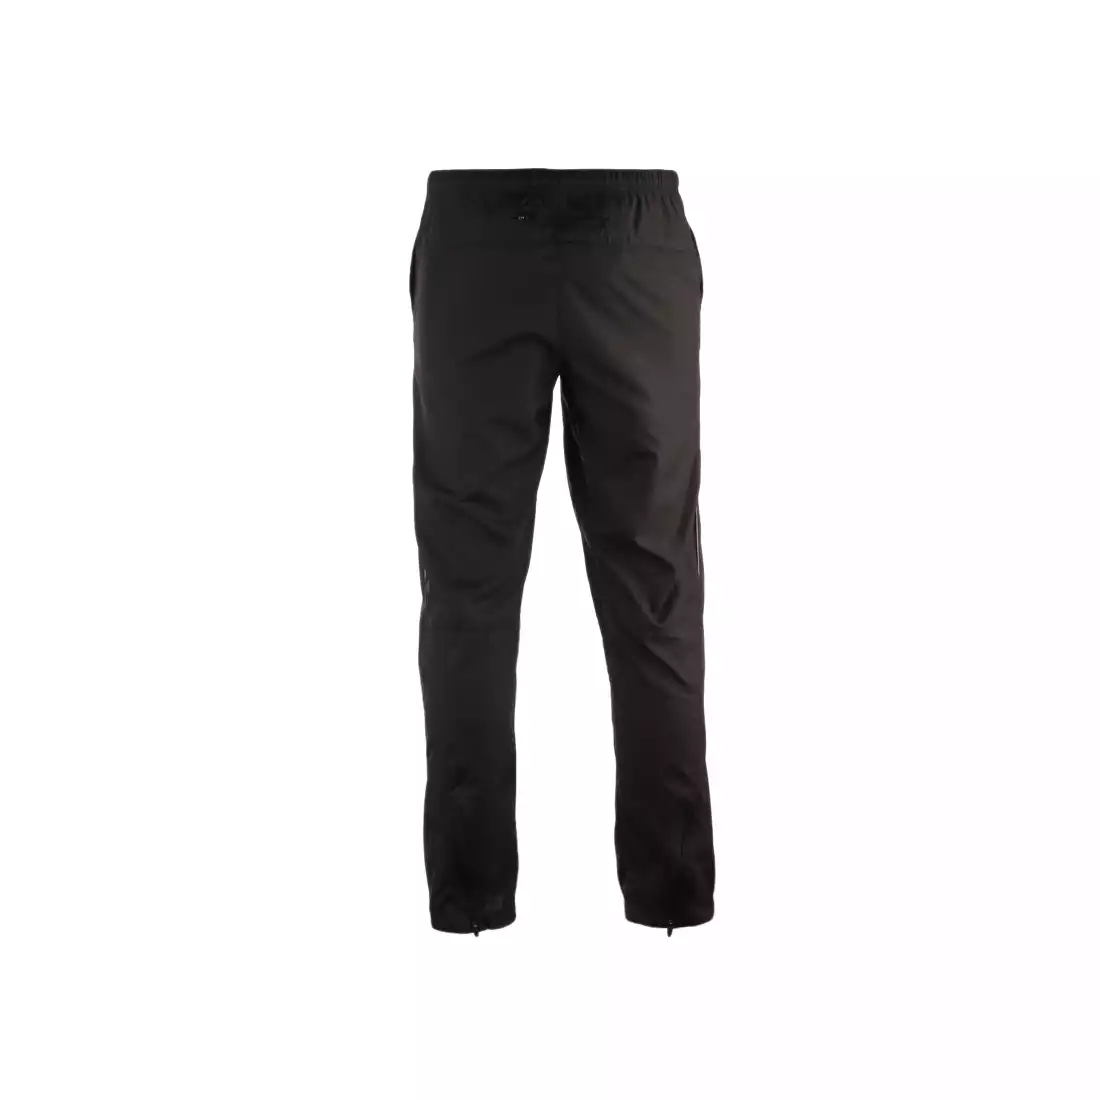 ASICS 321310-0900 - HERMES, luźne spodnie do biegania, kolor: Czarny